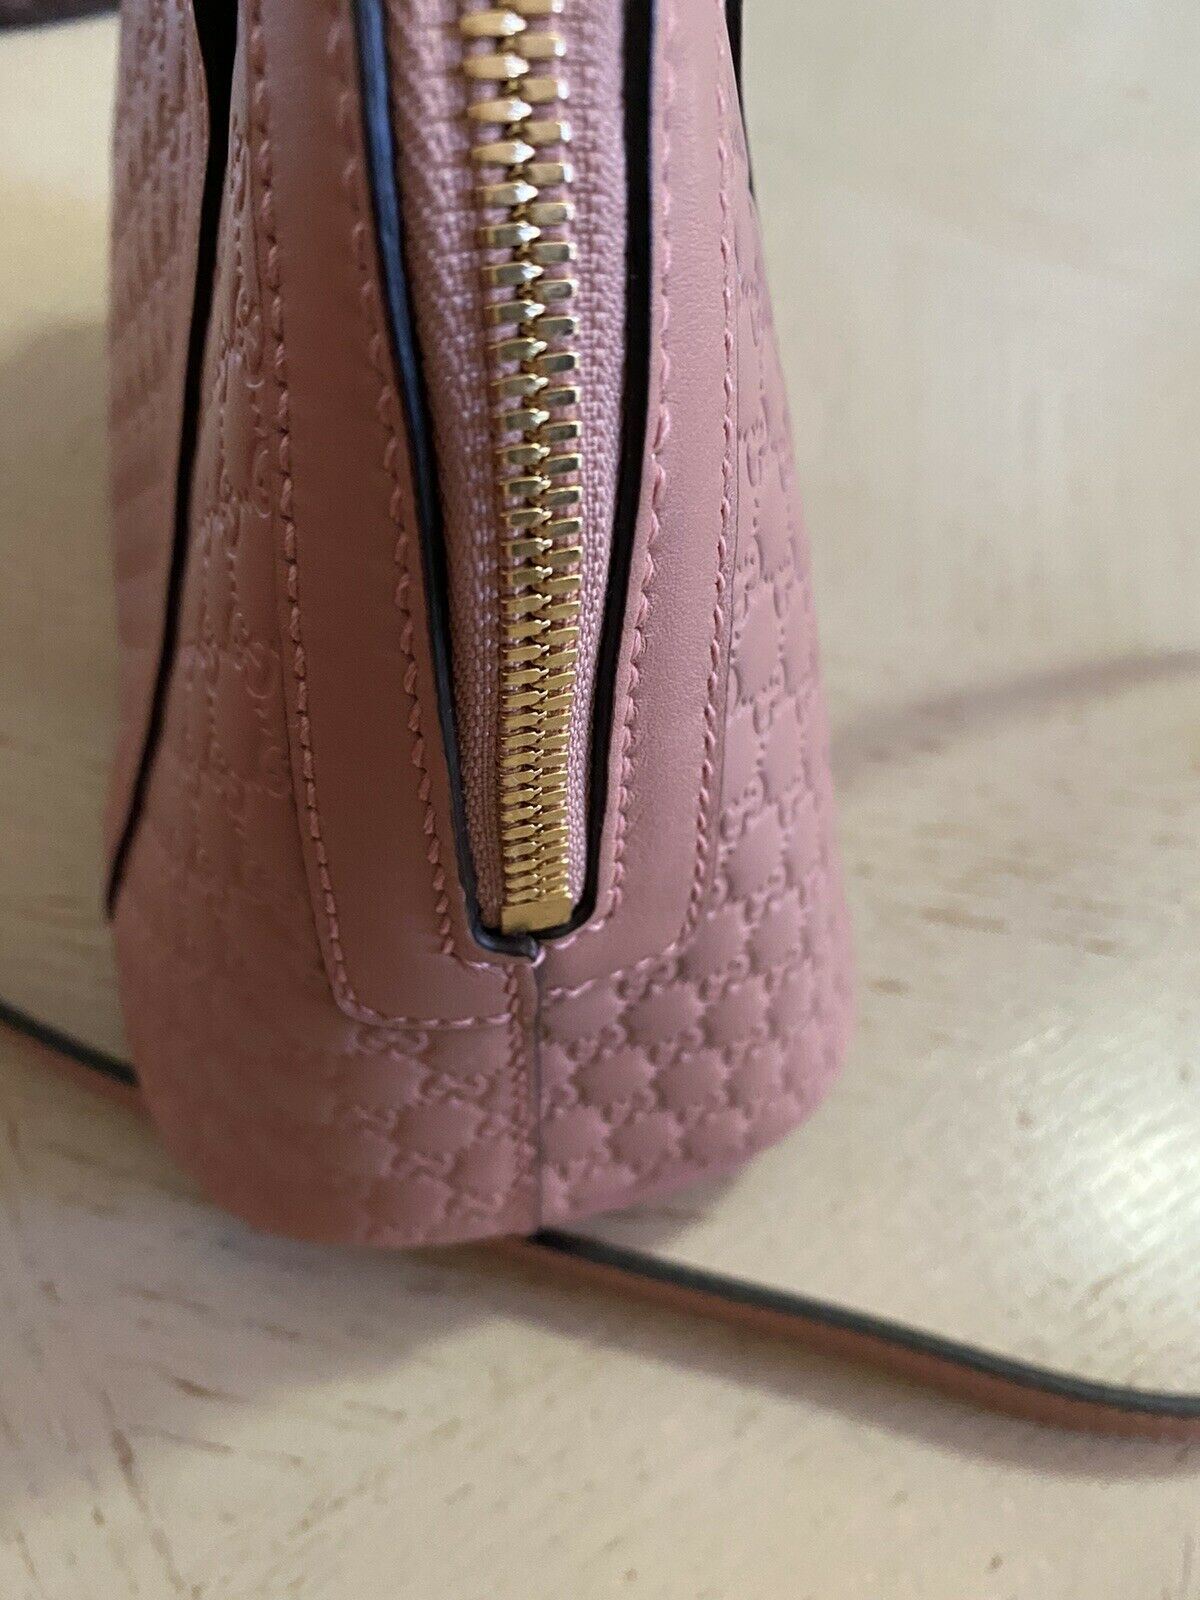 Neue Gucci Guccissimma Kleine Leder-Umhängetasche Pink/LT Pink 449654